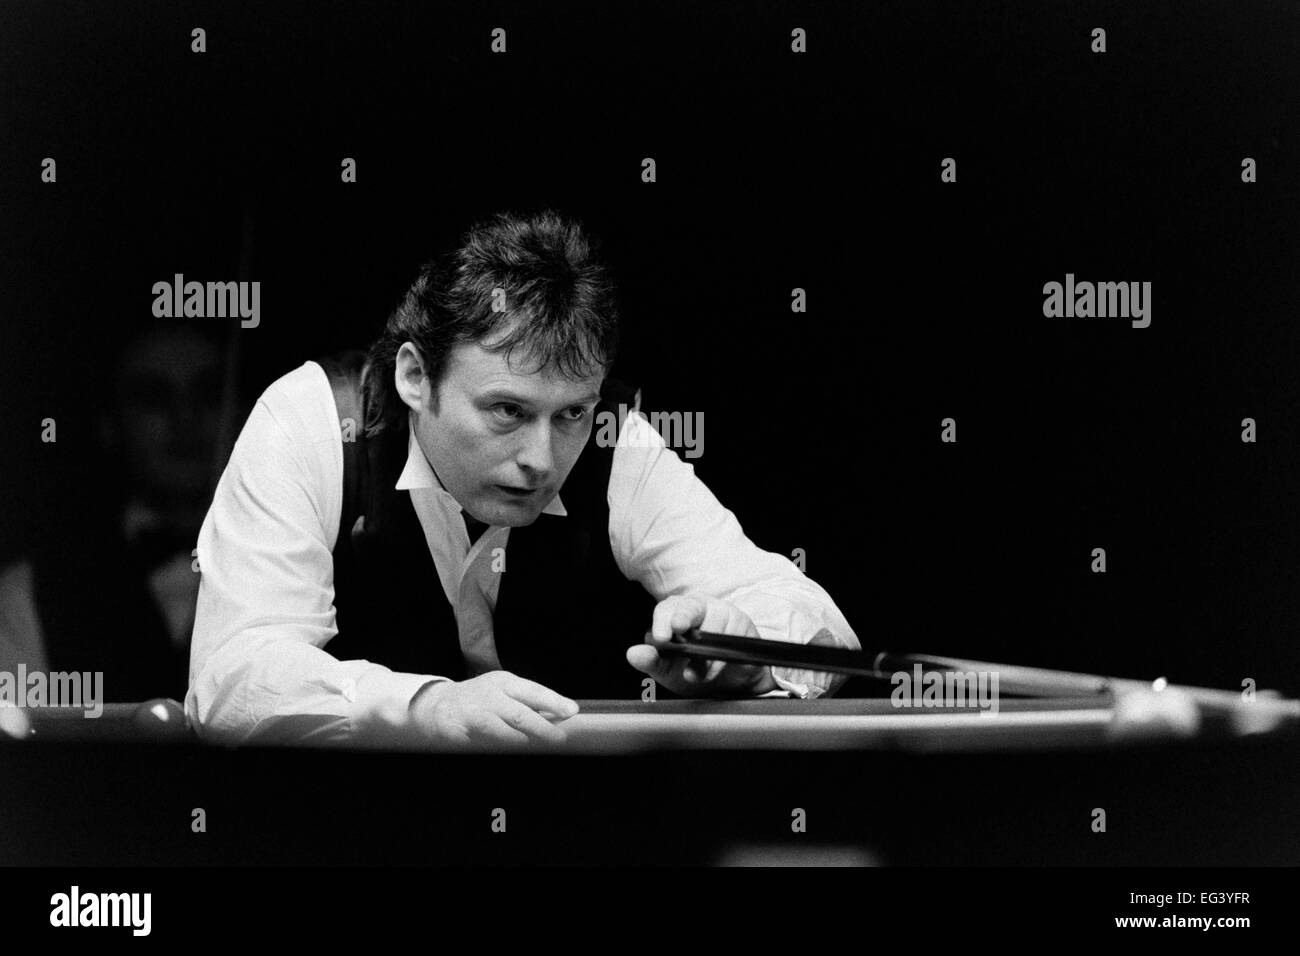 Jimmy White, der britischen Profi-snooker-Spieler, den Spitznamen "The Whirlwind" Stockfoto